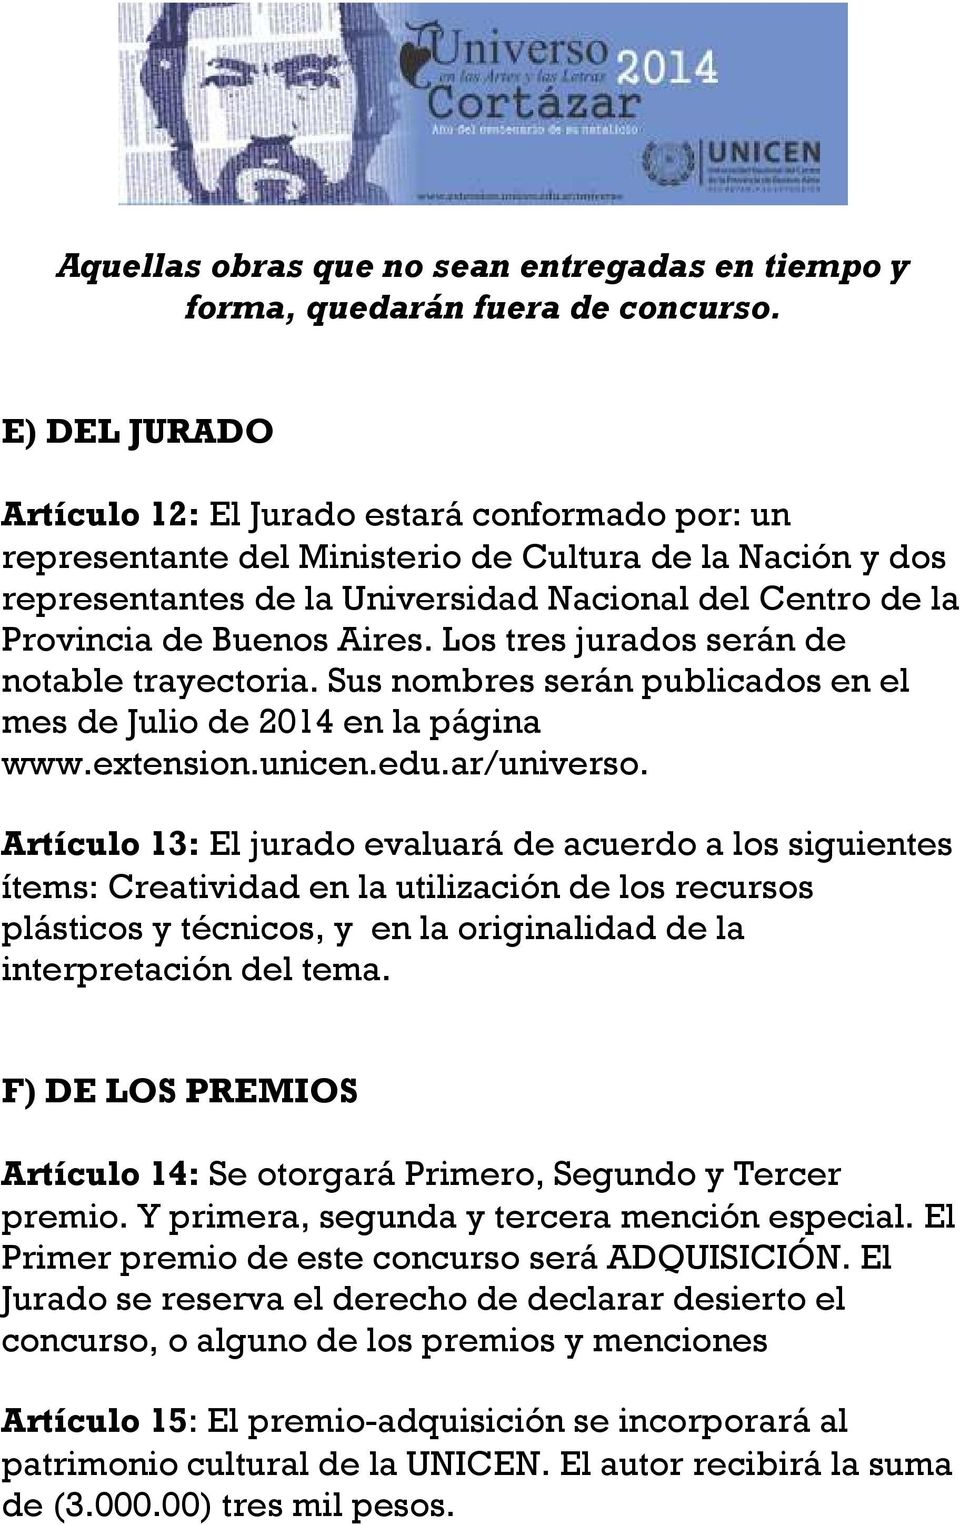 Buenos Aires. Los tres jurados serán de notable trayectoria. Sus nombres serán publicados en el mes de Julio de 2014 en la página www.extension.unicen.edu.ar/universo.